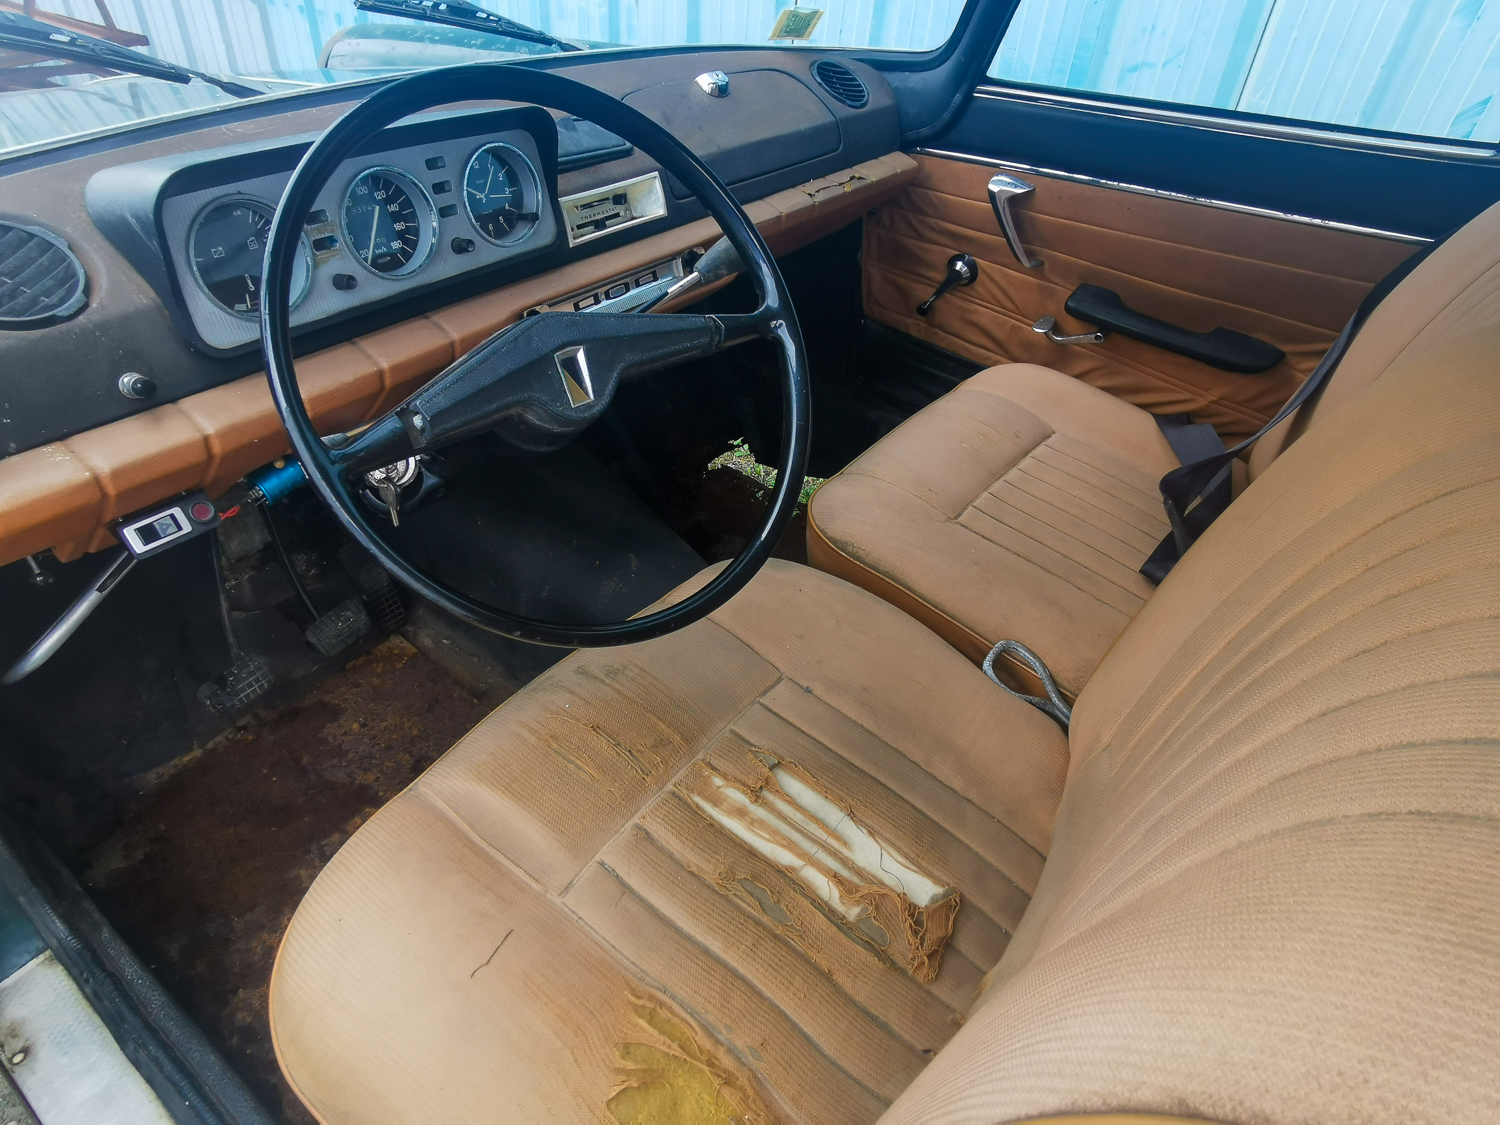 A vendre Peugeot 404 L break de 1968 de 1ère main à restaurer